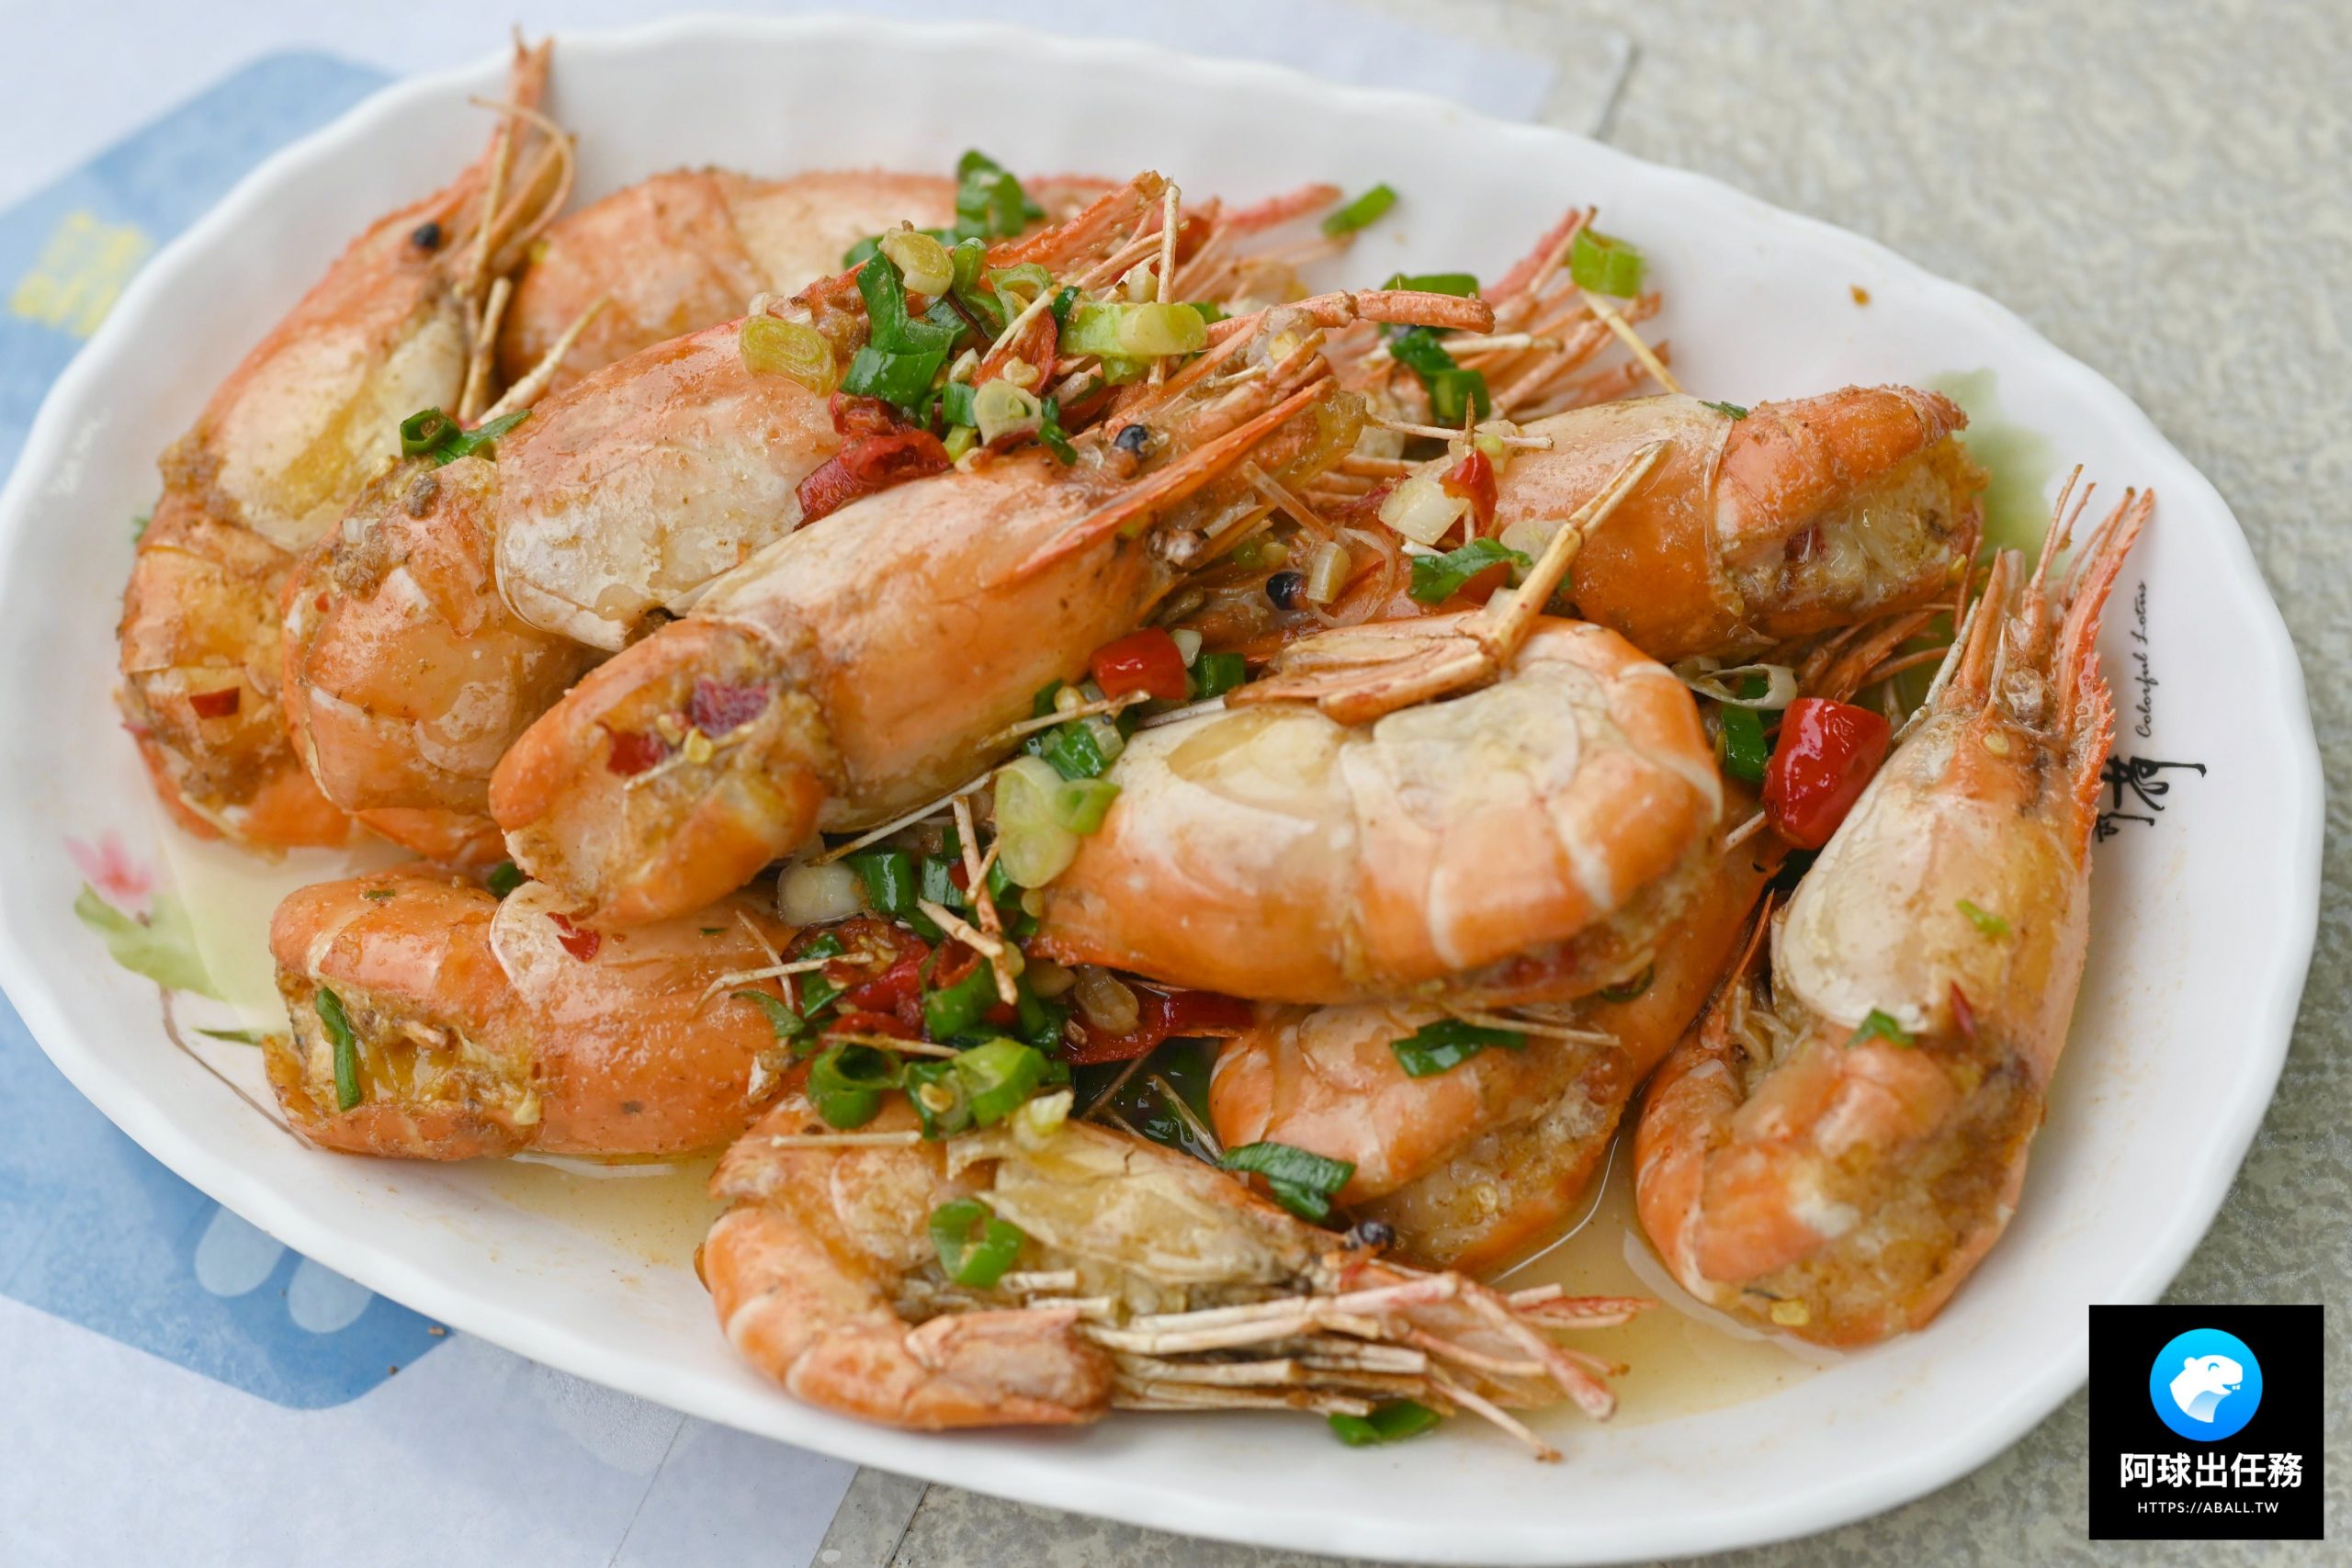 今日熱門文章：【景安美食】景安路活蝦之家，超級便宜好吃的活蝦